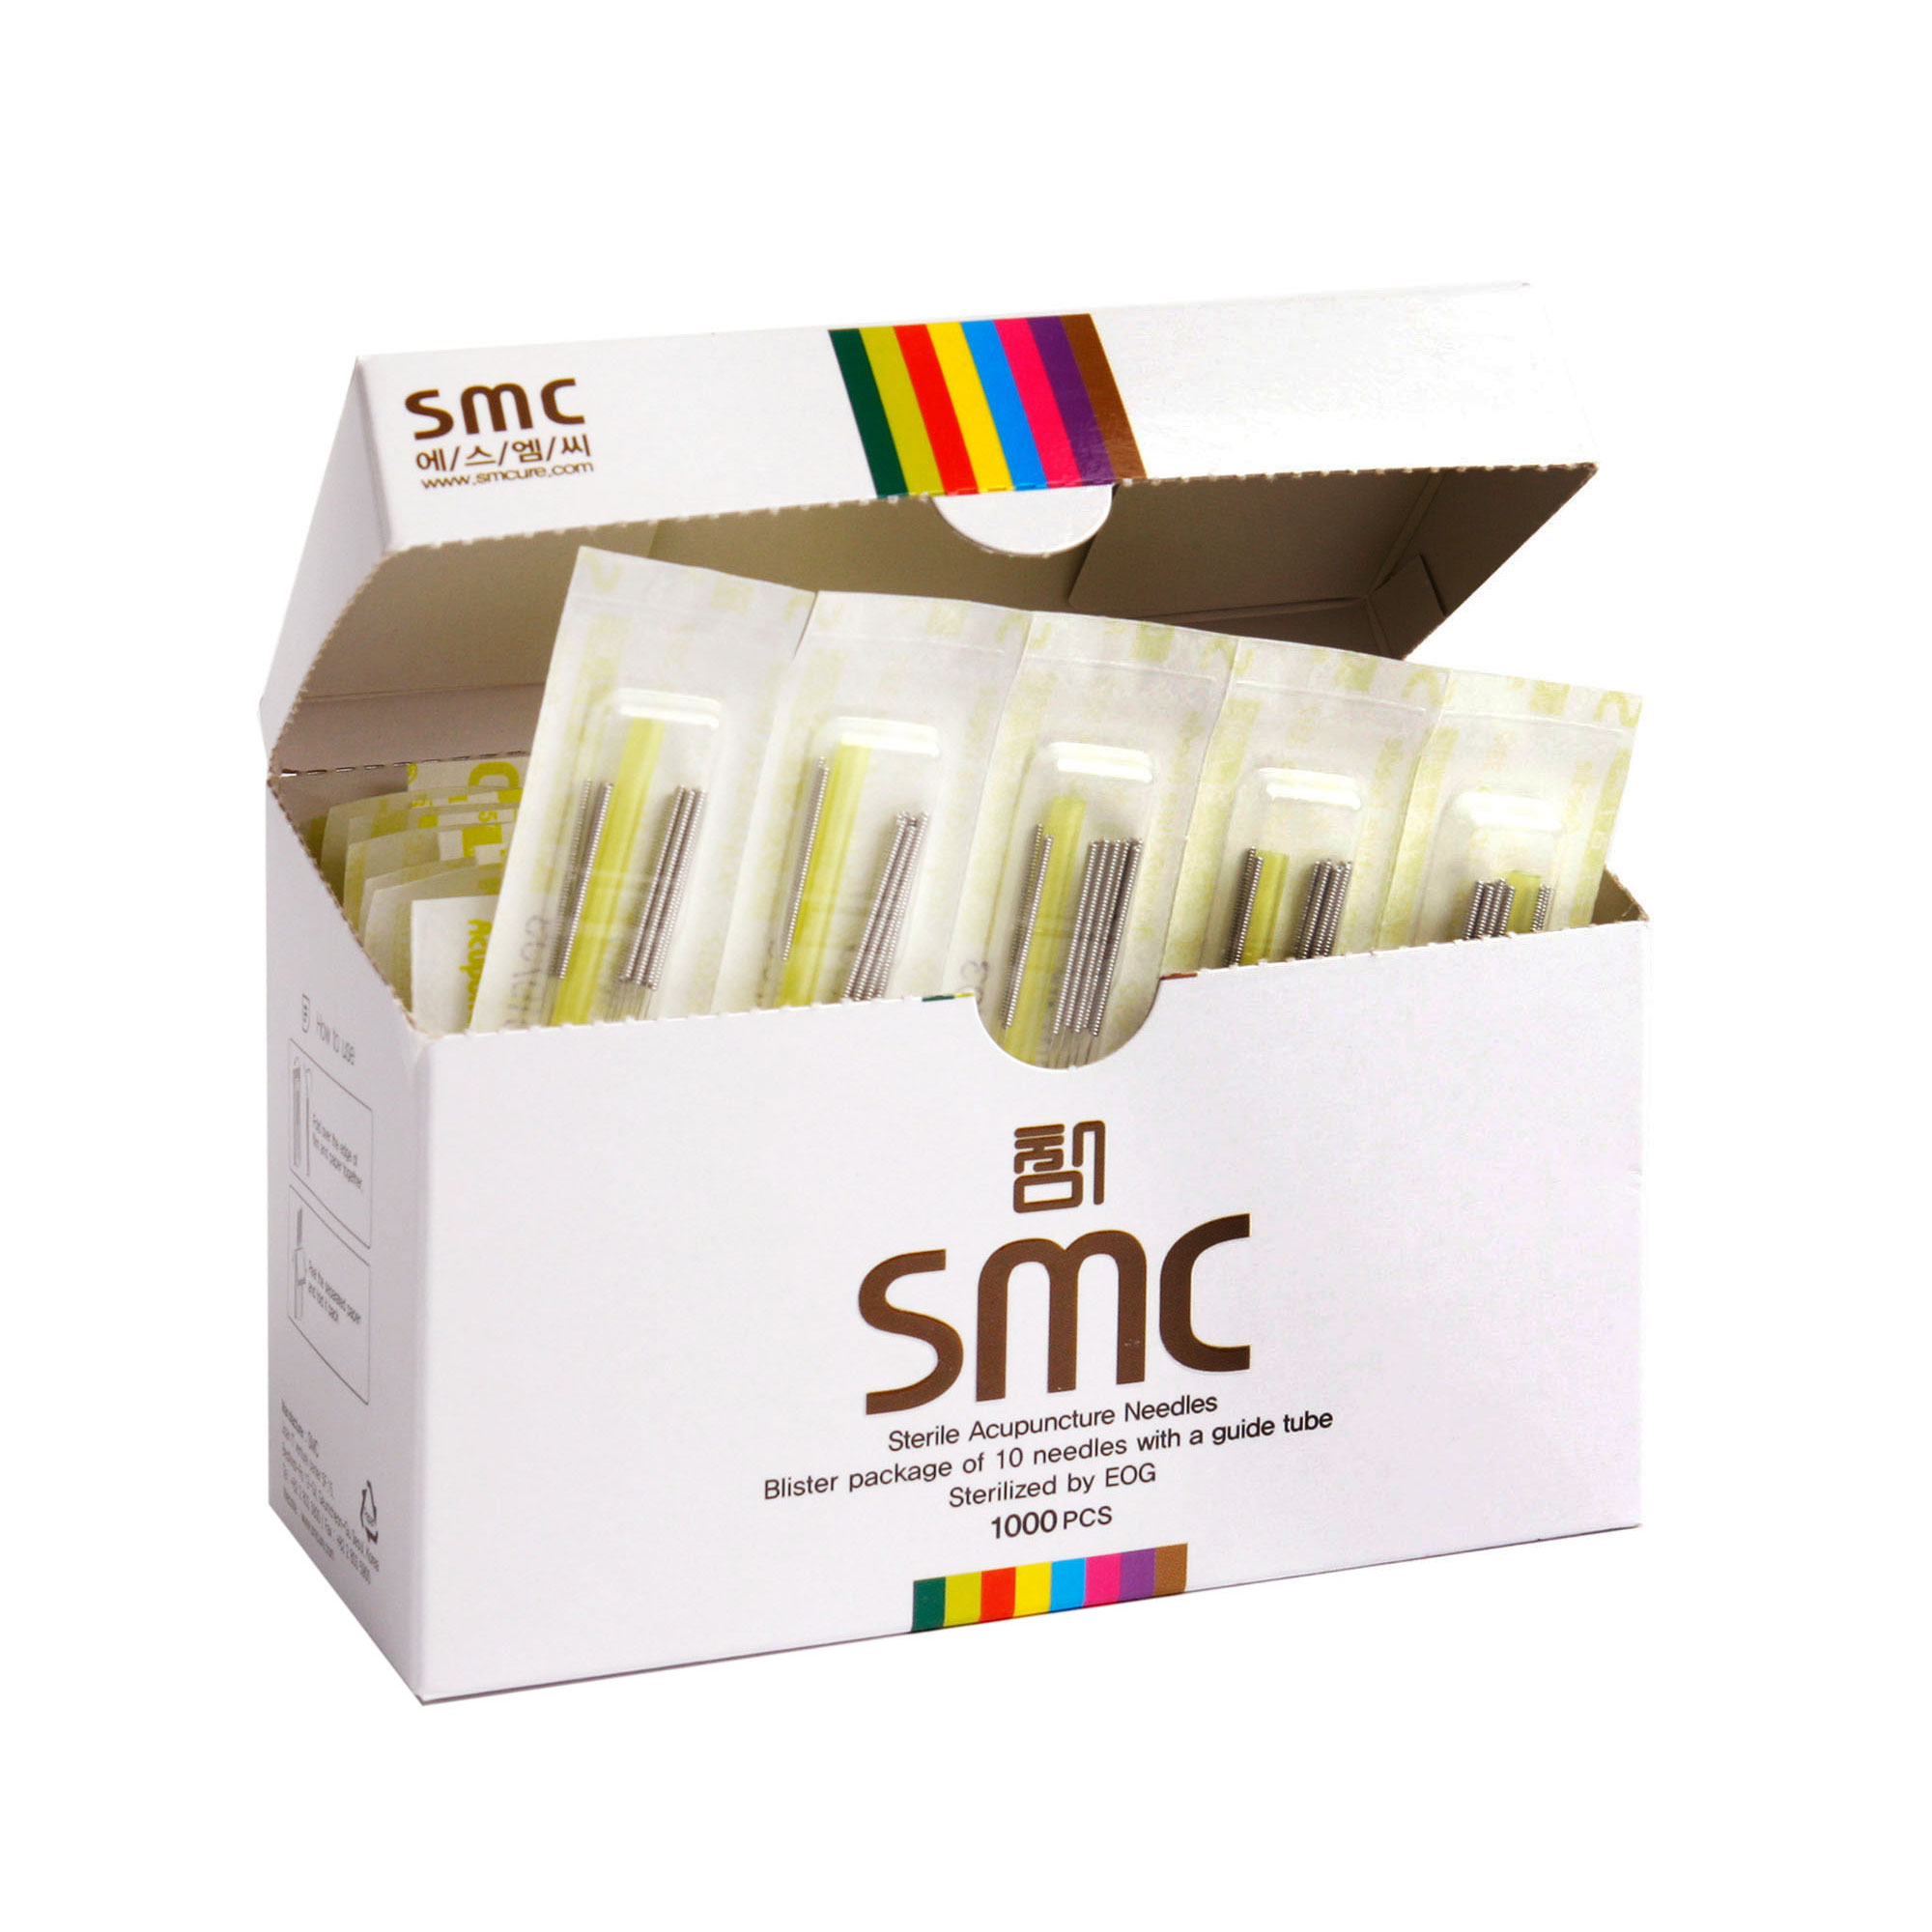 SMC Akupunktur iğnesi 0.25x13mm